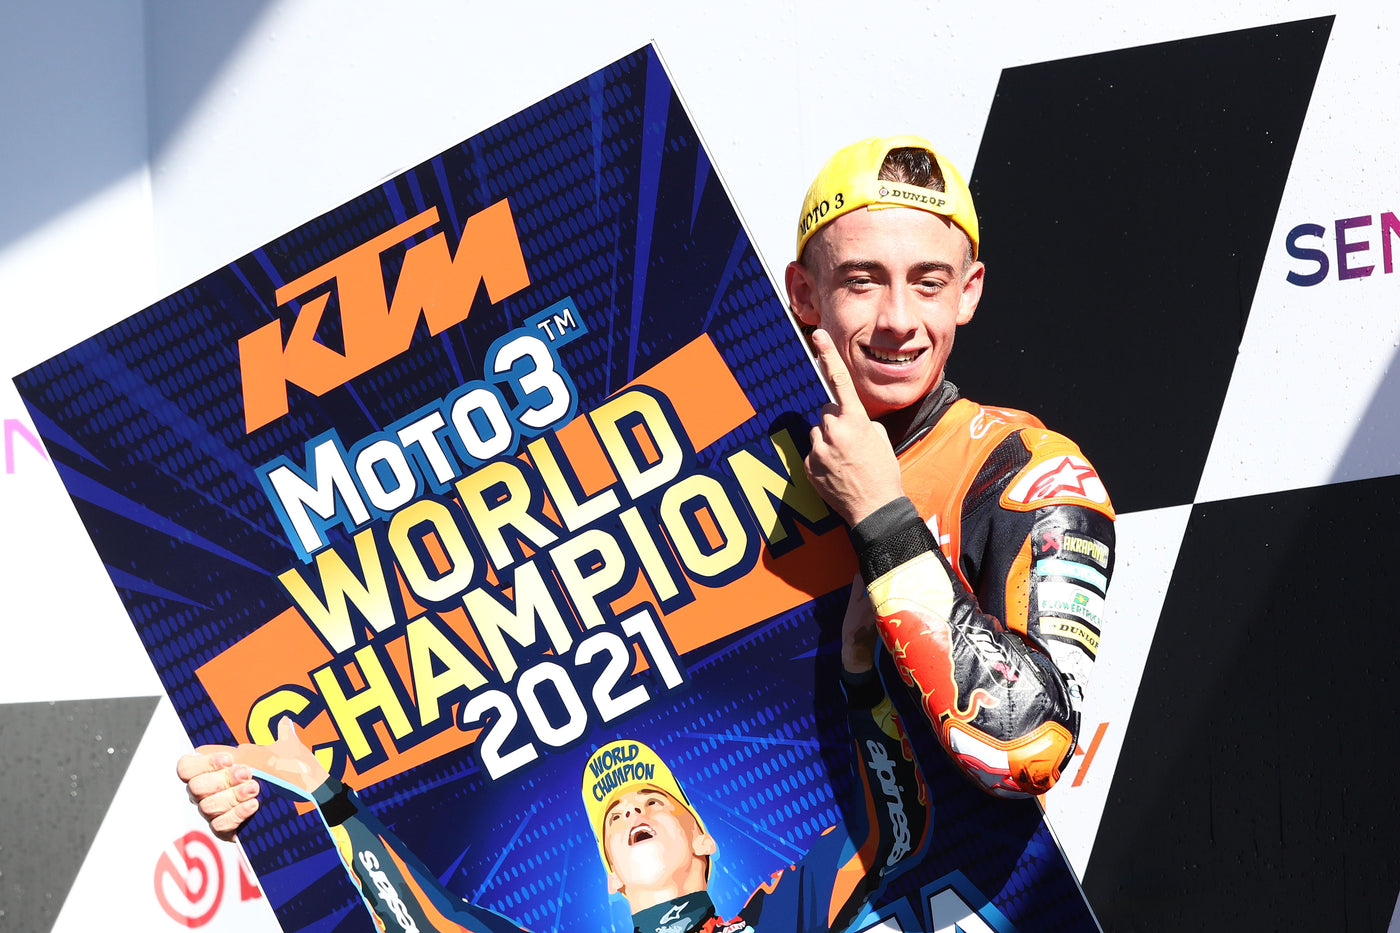 Red Bull KTM Ajo Motorsport rider Pedro Acosta Moto3 World Champion!